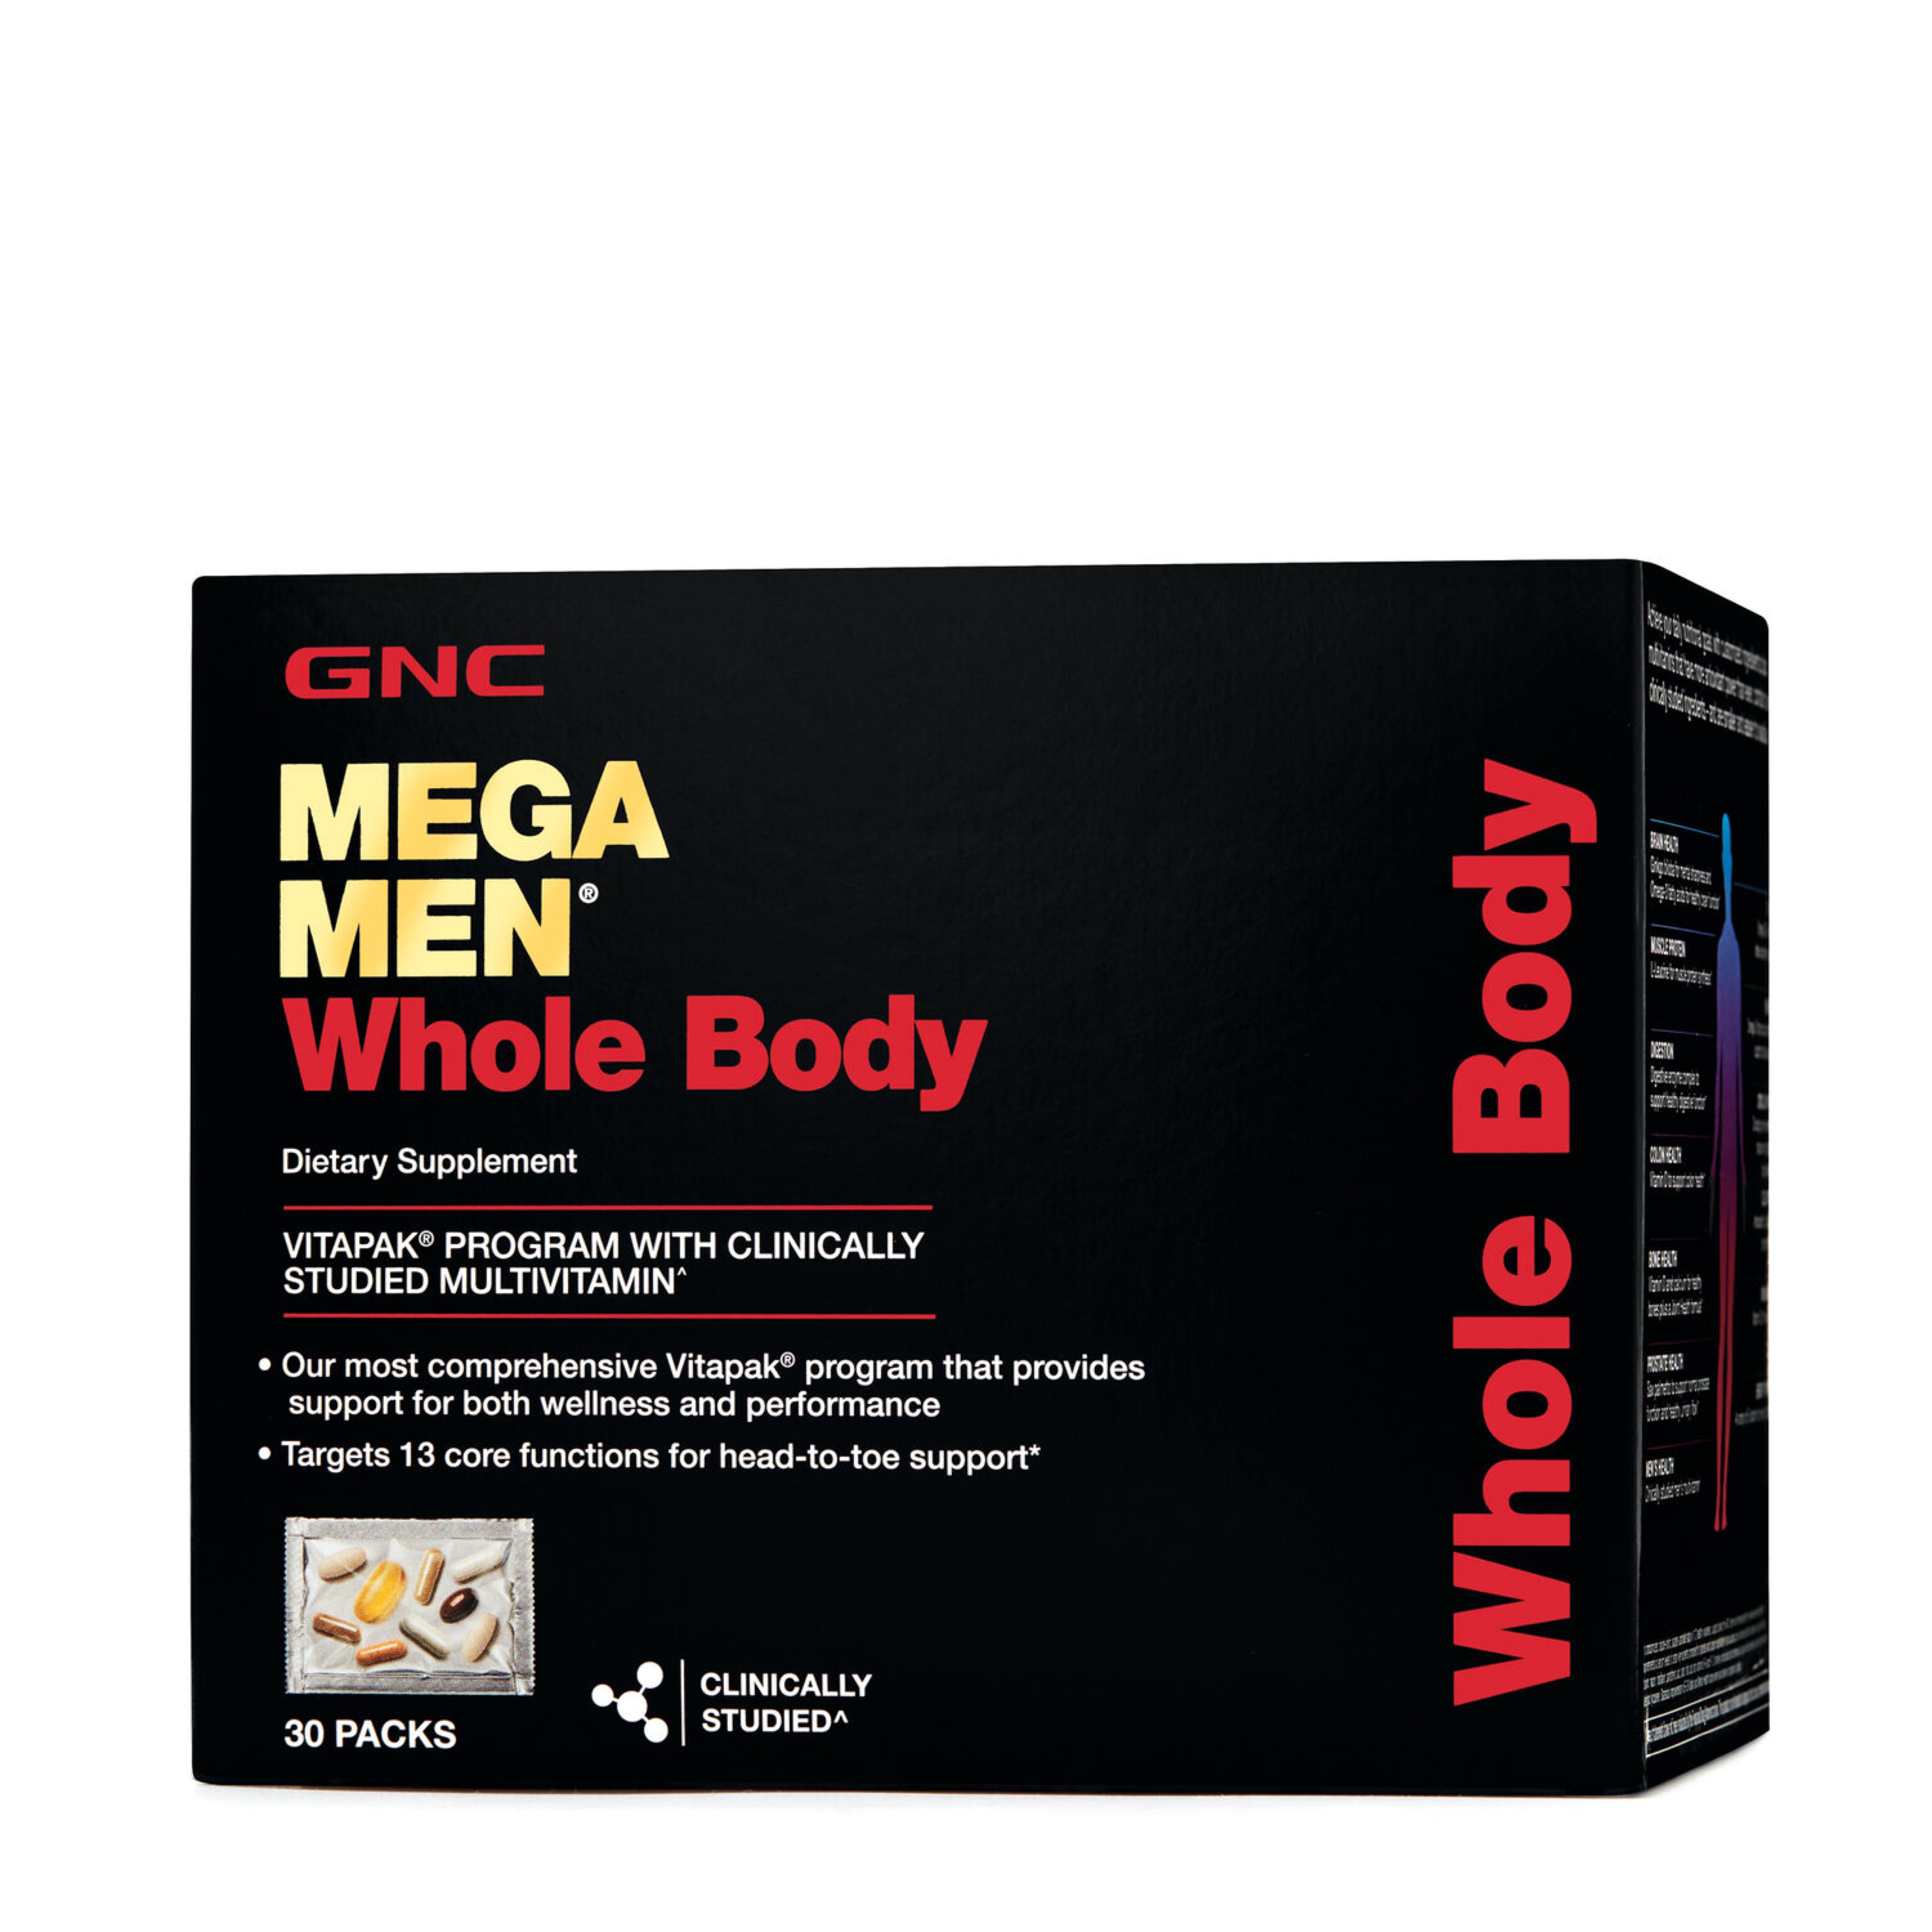 GNC MEGA MEN Whole Body Vitapak Program – 30 Pack